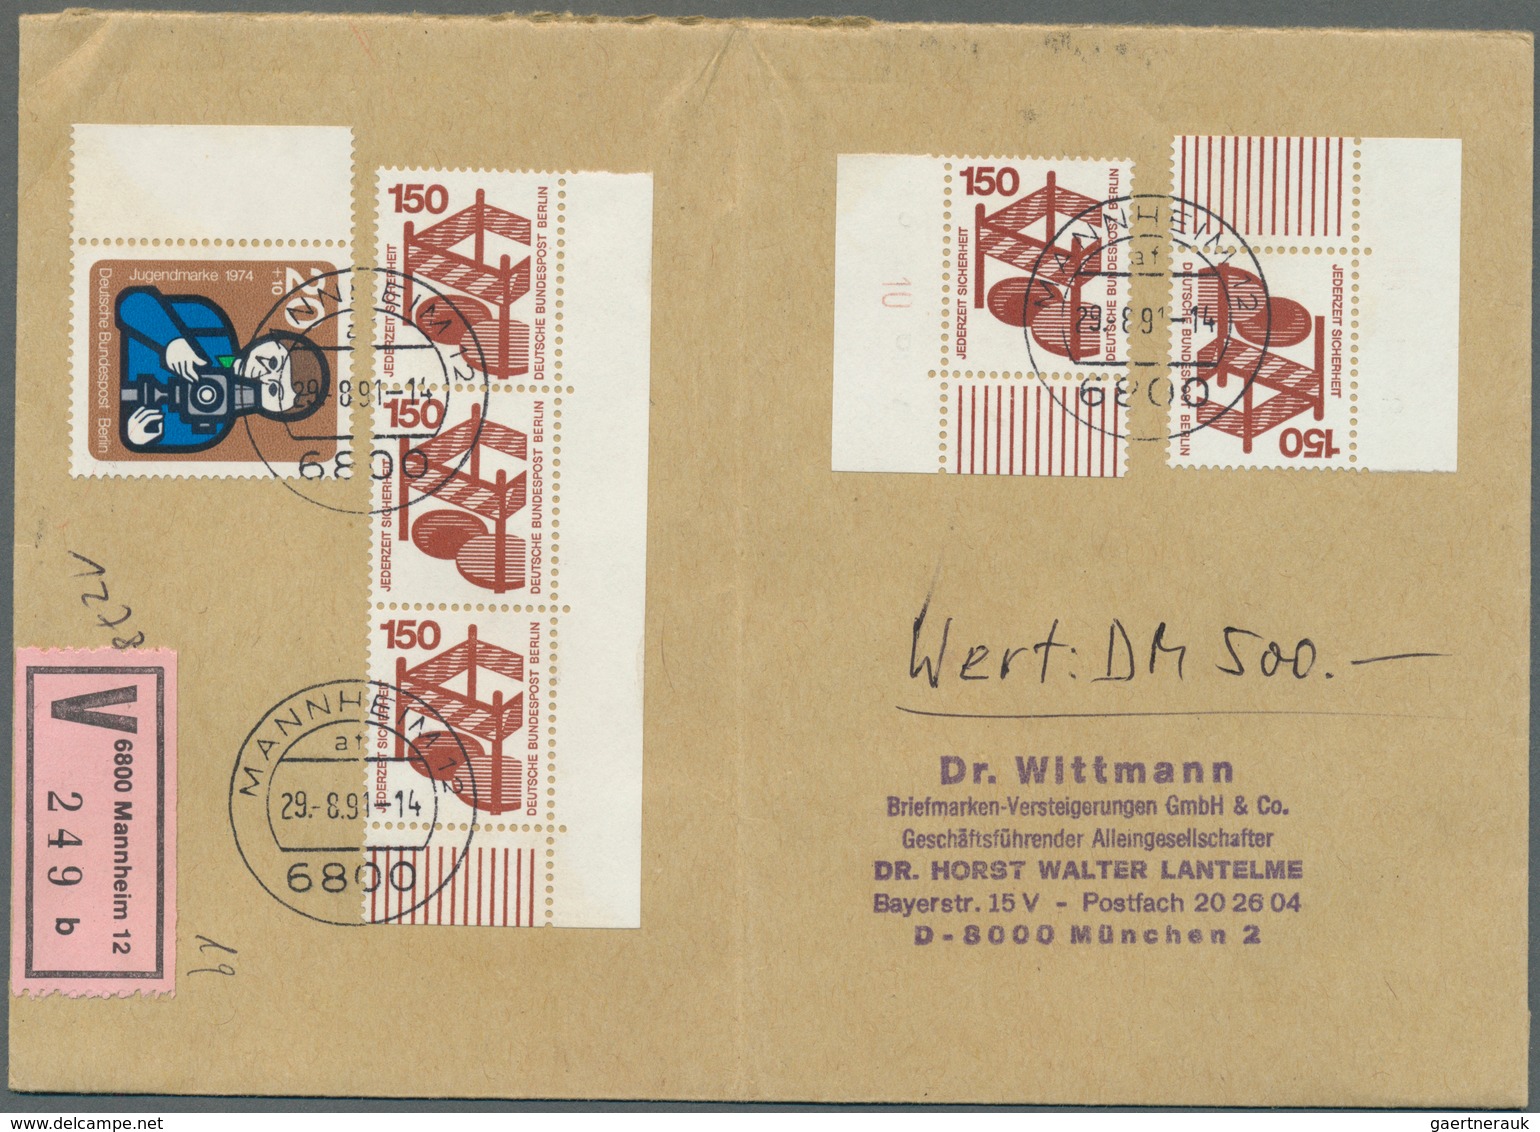 32525 Berlin: 1980/1991 (ca.), vielseitiger Bestand von über 250 Briefen und Karten aus Firmen-Korresponde